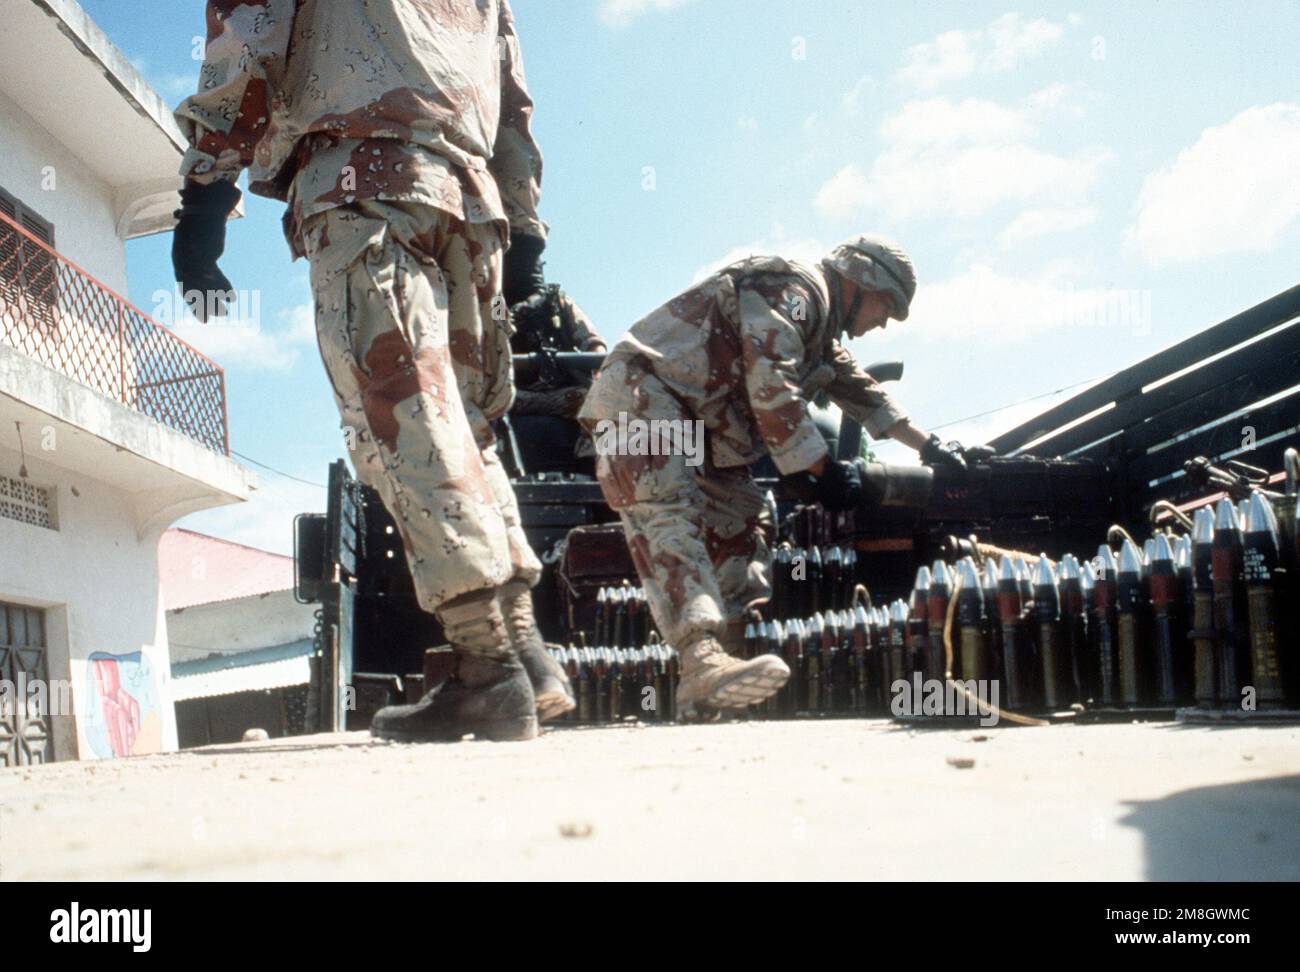 Les munitions d'inventaire de Marines confisquées au cours de l'opération multinationale de secours Restore Hope. Objet opération/série: RÉTABLIR L'ESPOIR base: Modadishu pays: Somalie (SOM) Banque D'Images